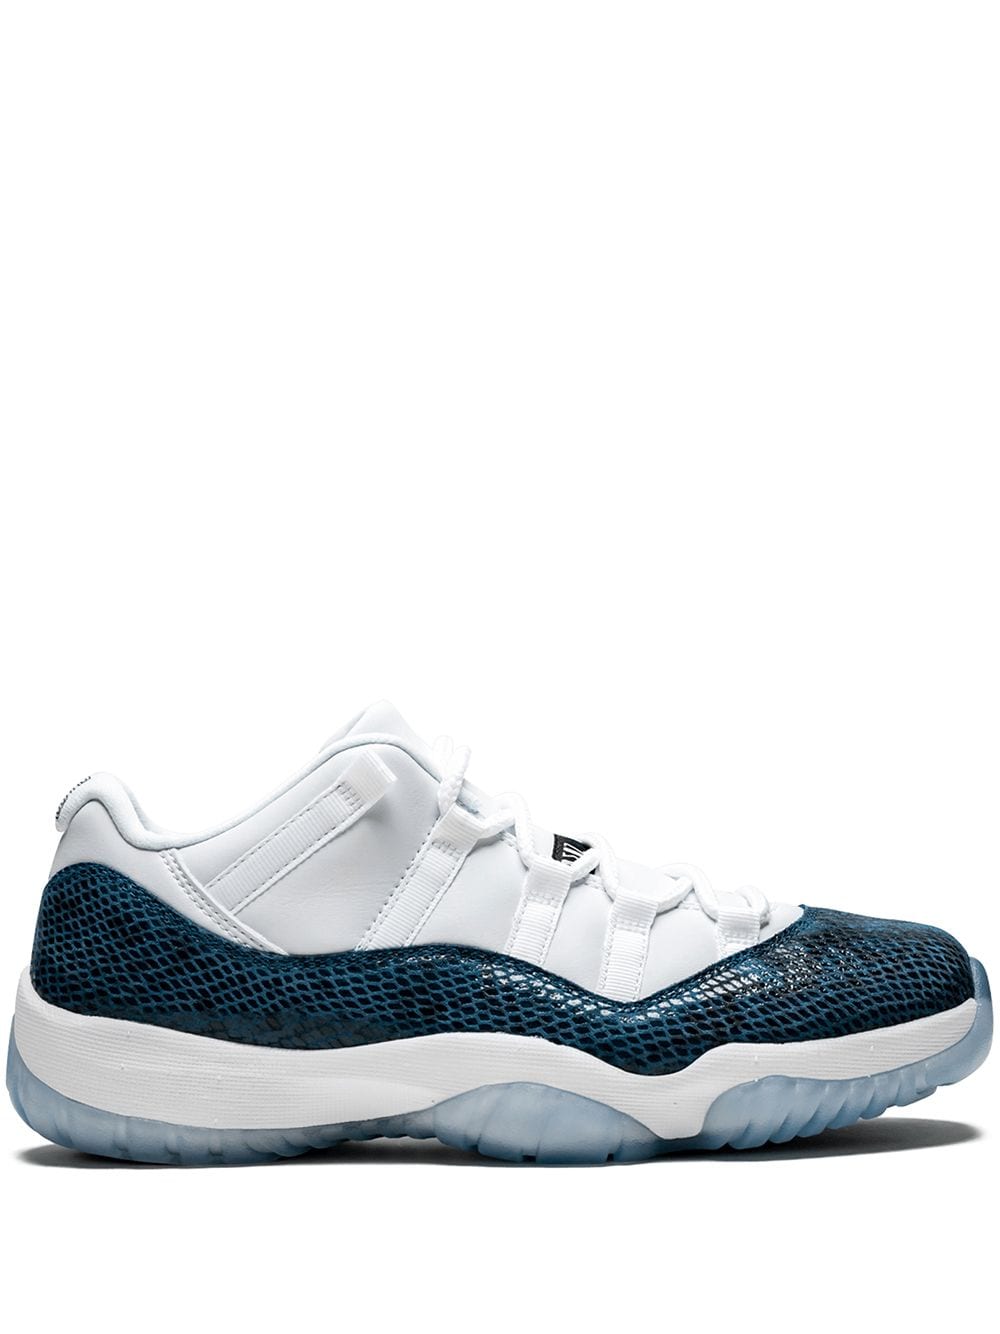 Jordan Air Jordan 11 Low Retro "Blue Snakeskin" sneakers - White